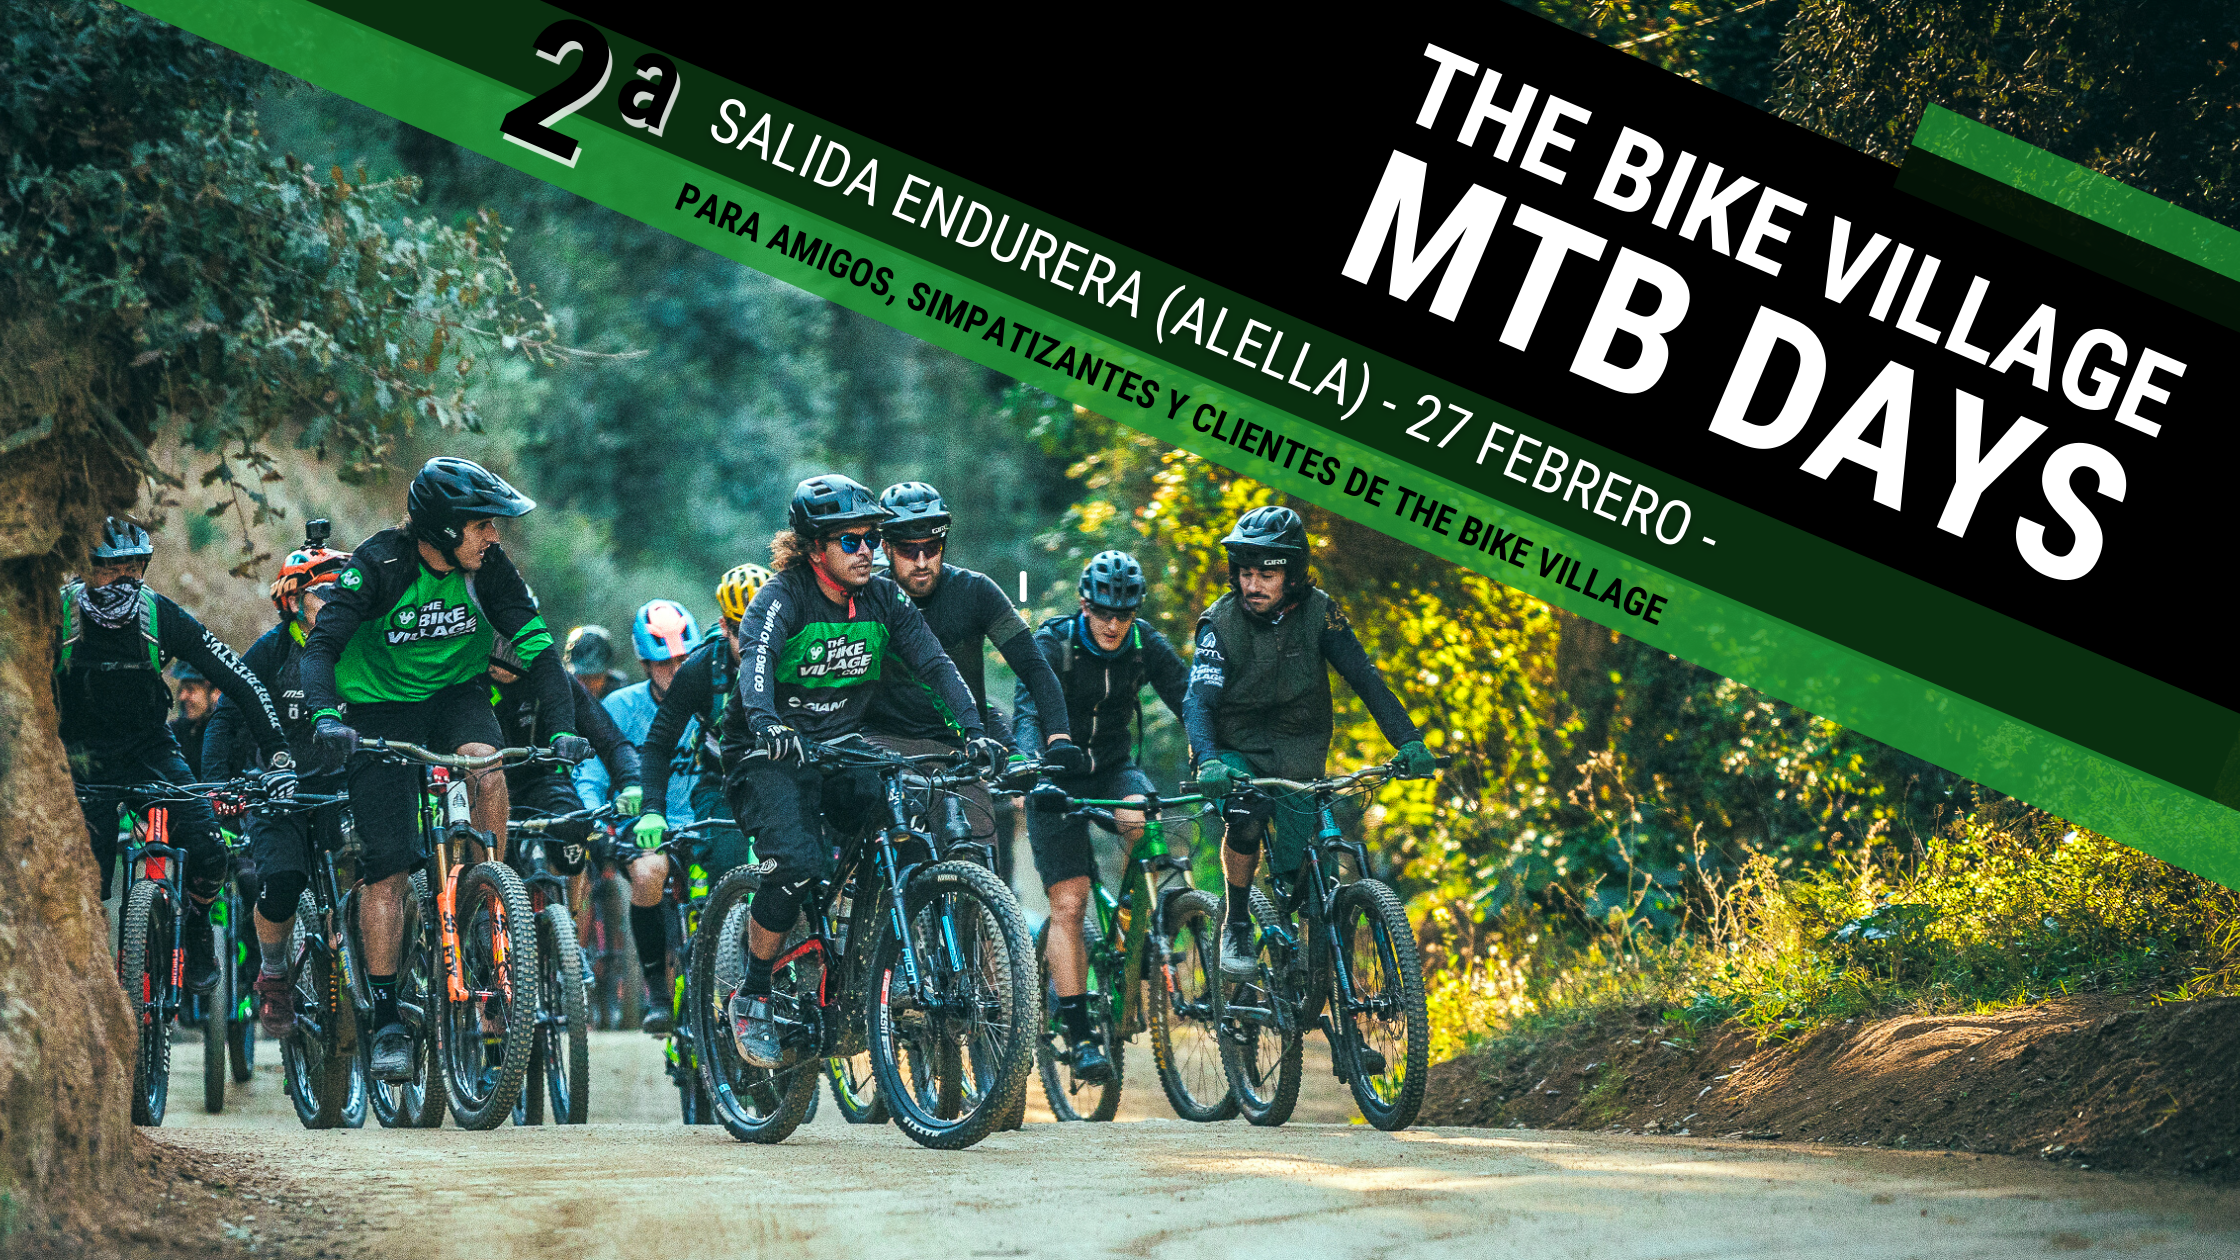 Banner web de la salida enduera del 27 de febrero en Alella de los The Bike Village Days 2022